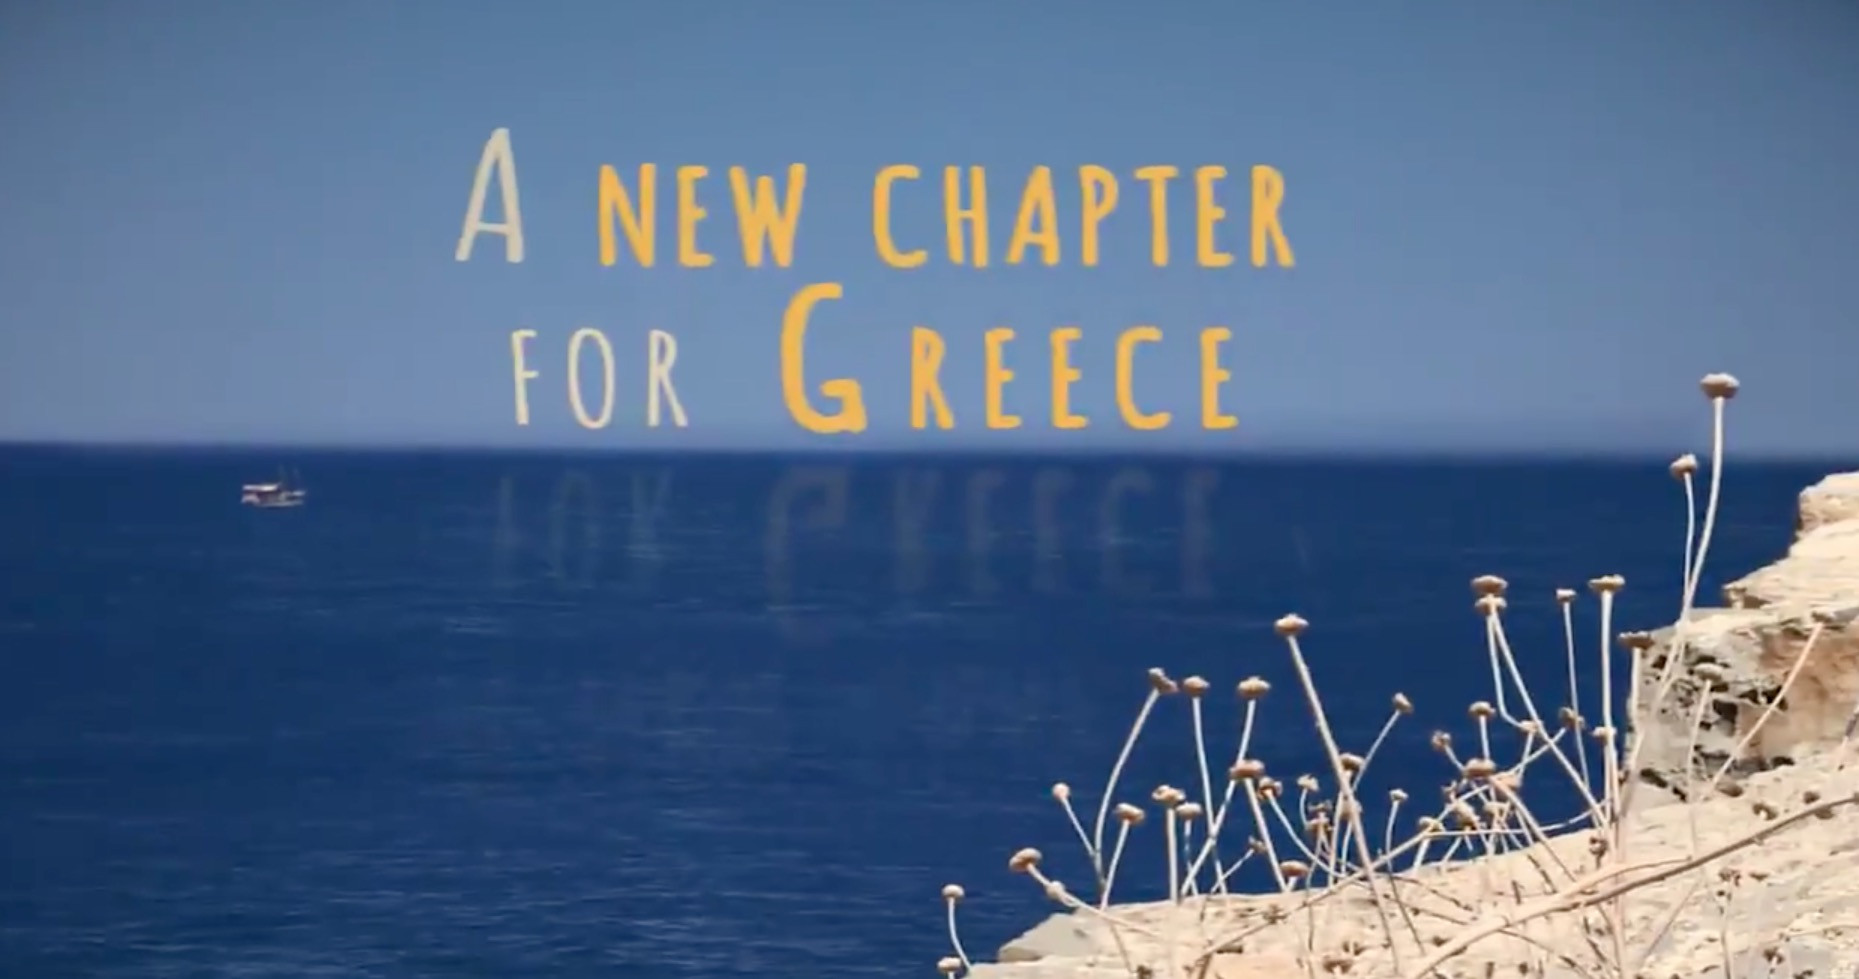 Τέλος ελληνικού προγράμματος: Με βίντεο στο twitter το γιορτάζει η Κομισιόν